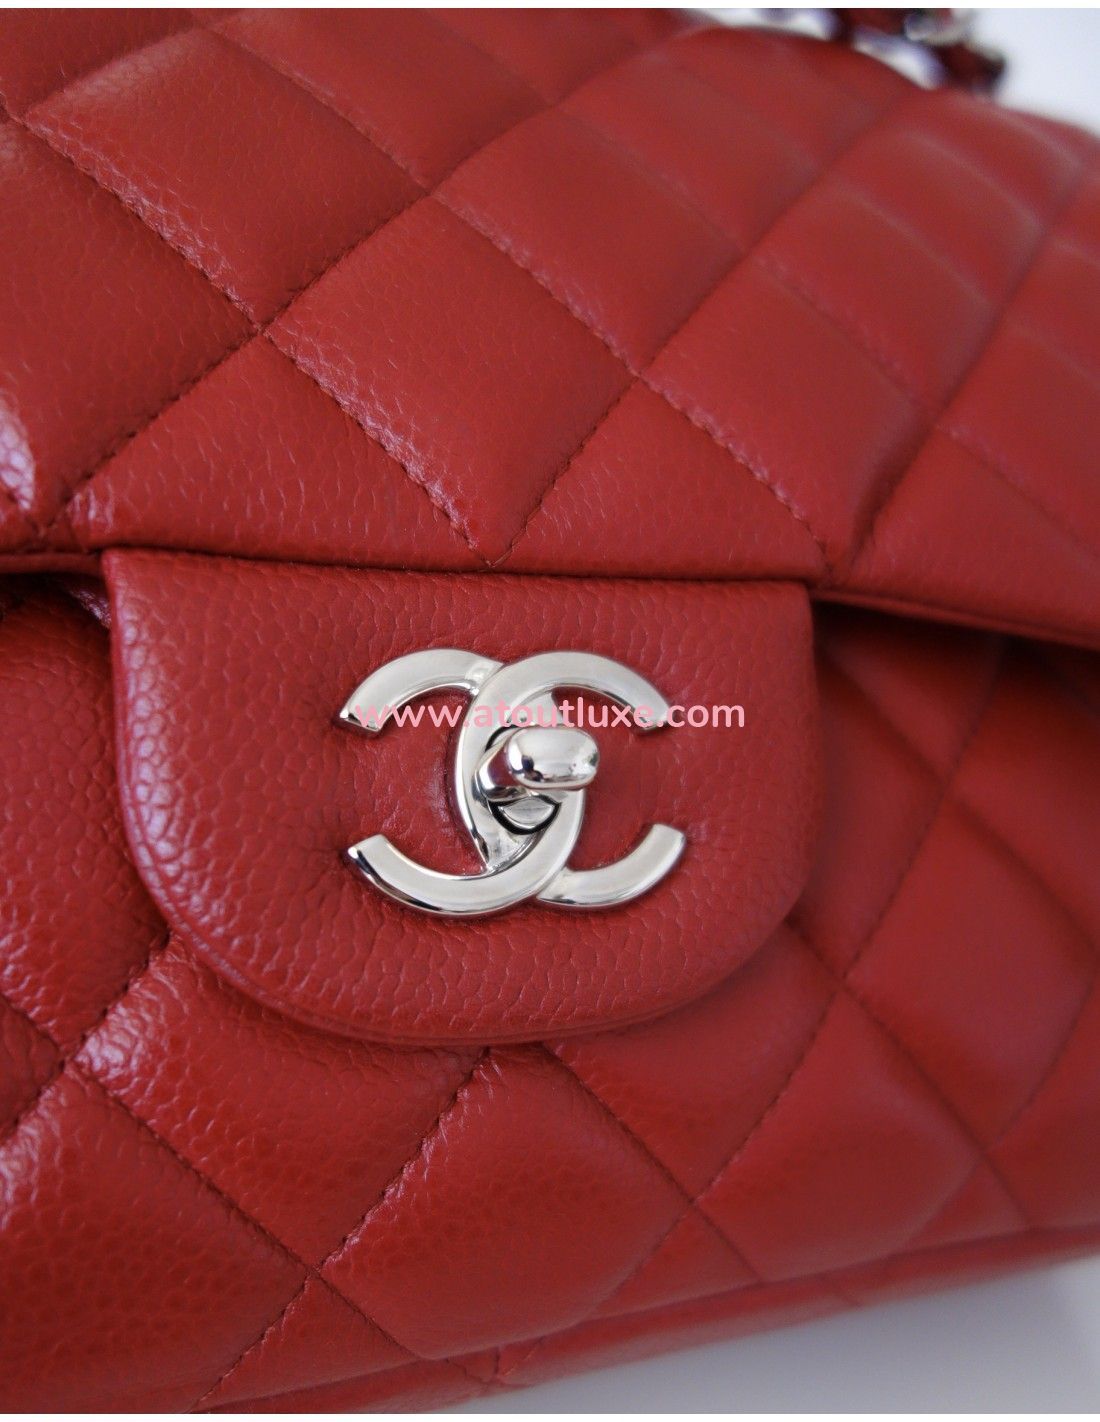 Sac Chanel Classique rouge